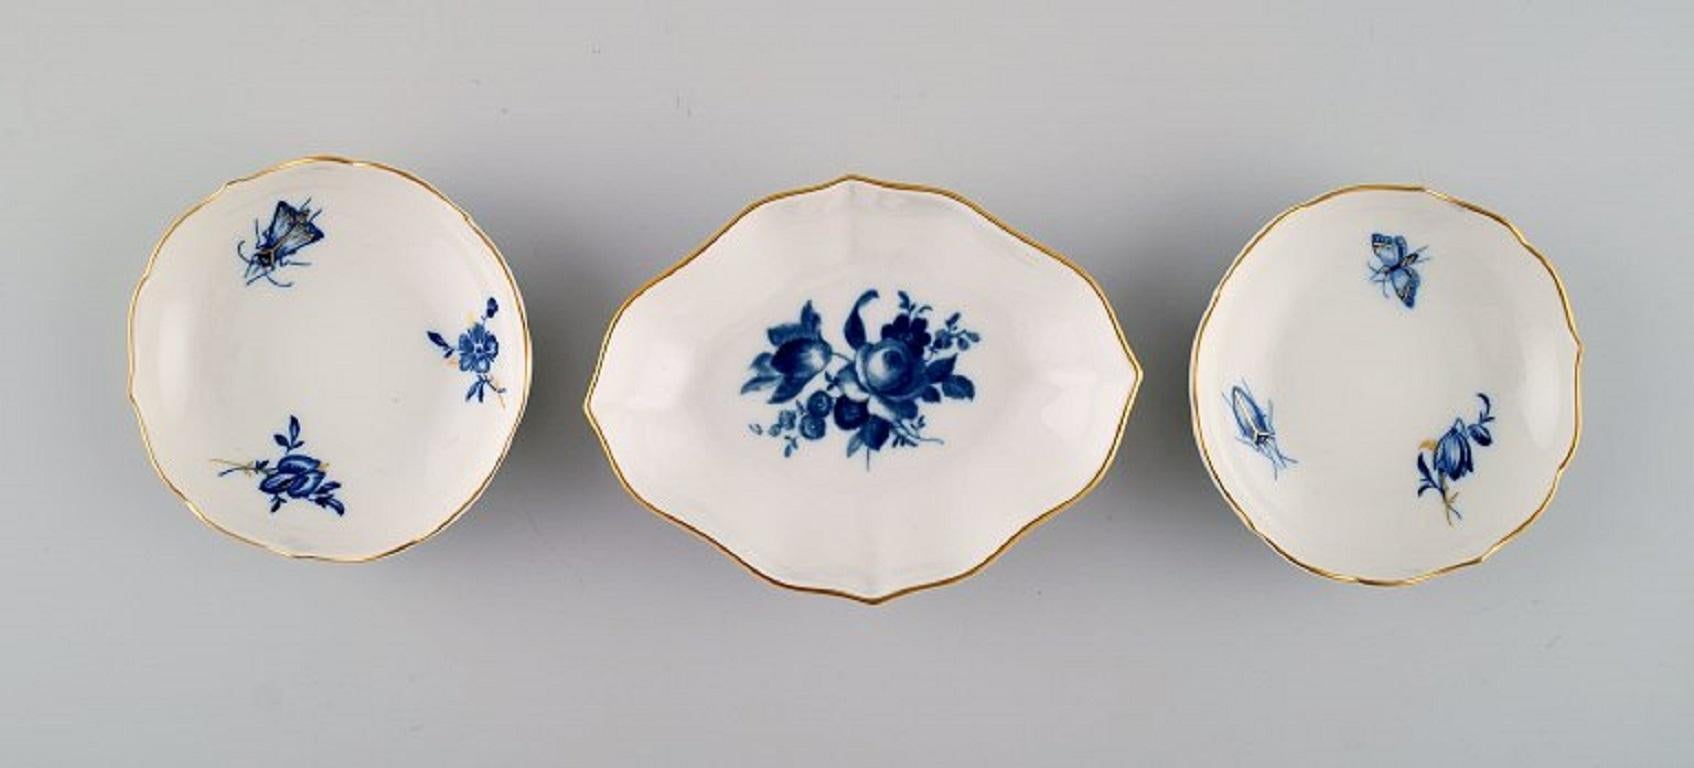 Meissen Aquatinta. Deux pots à couvercle et trois bols à caviar en porcelaine avec fleurs bleues peintes à la main et bord doré. 
20ème siècle.
Le plus grand pot à couvercle mesure : 7 x 5 cm.
Le plus grand bol mesure : 10.5 x 2,5 cm.
En parfait